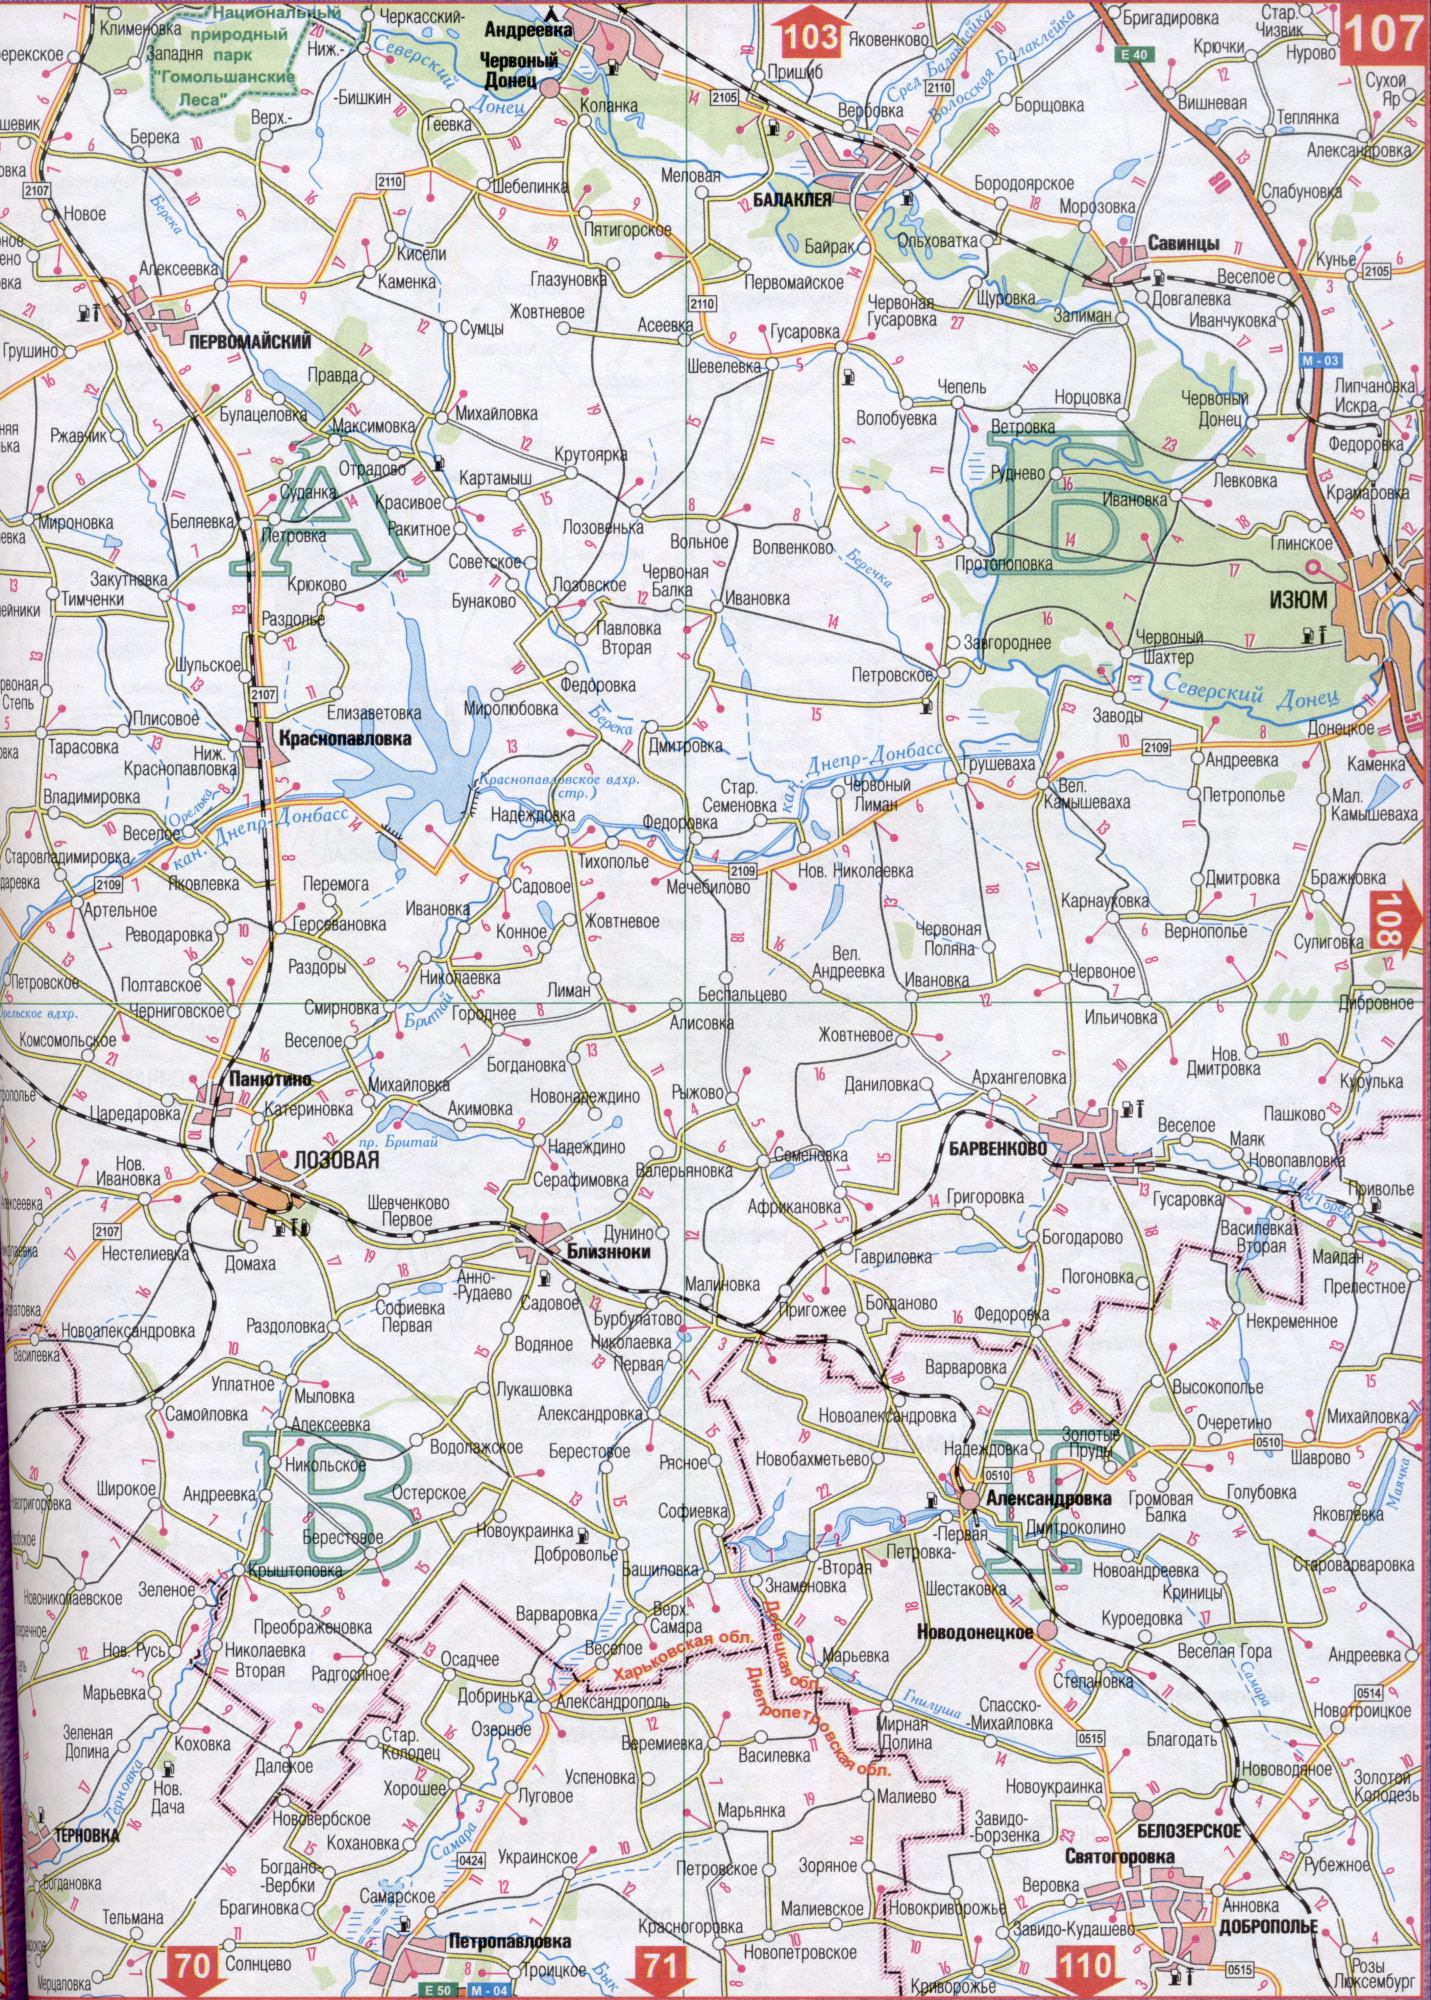 Карта Харьковской области Украины (областной центр г.Харьков). Скачать бесплатно подробную карту автомобильных дорог